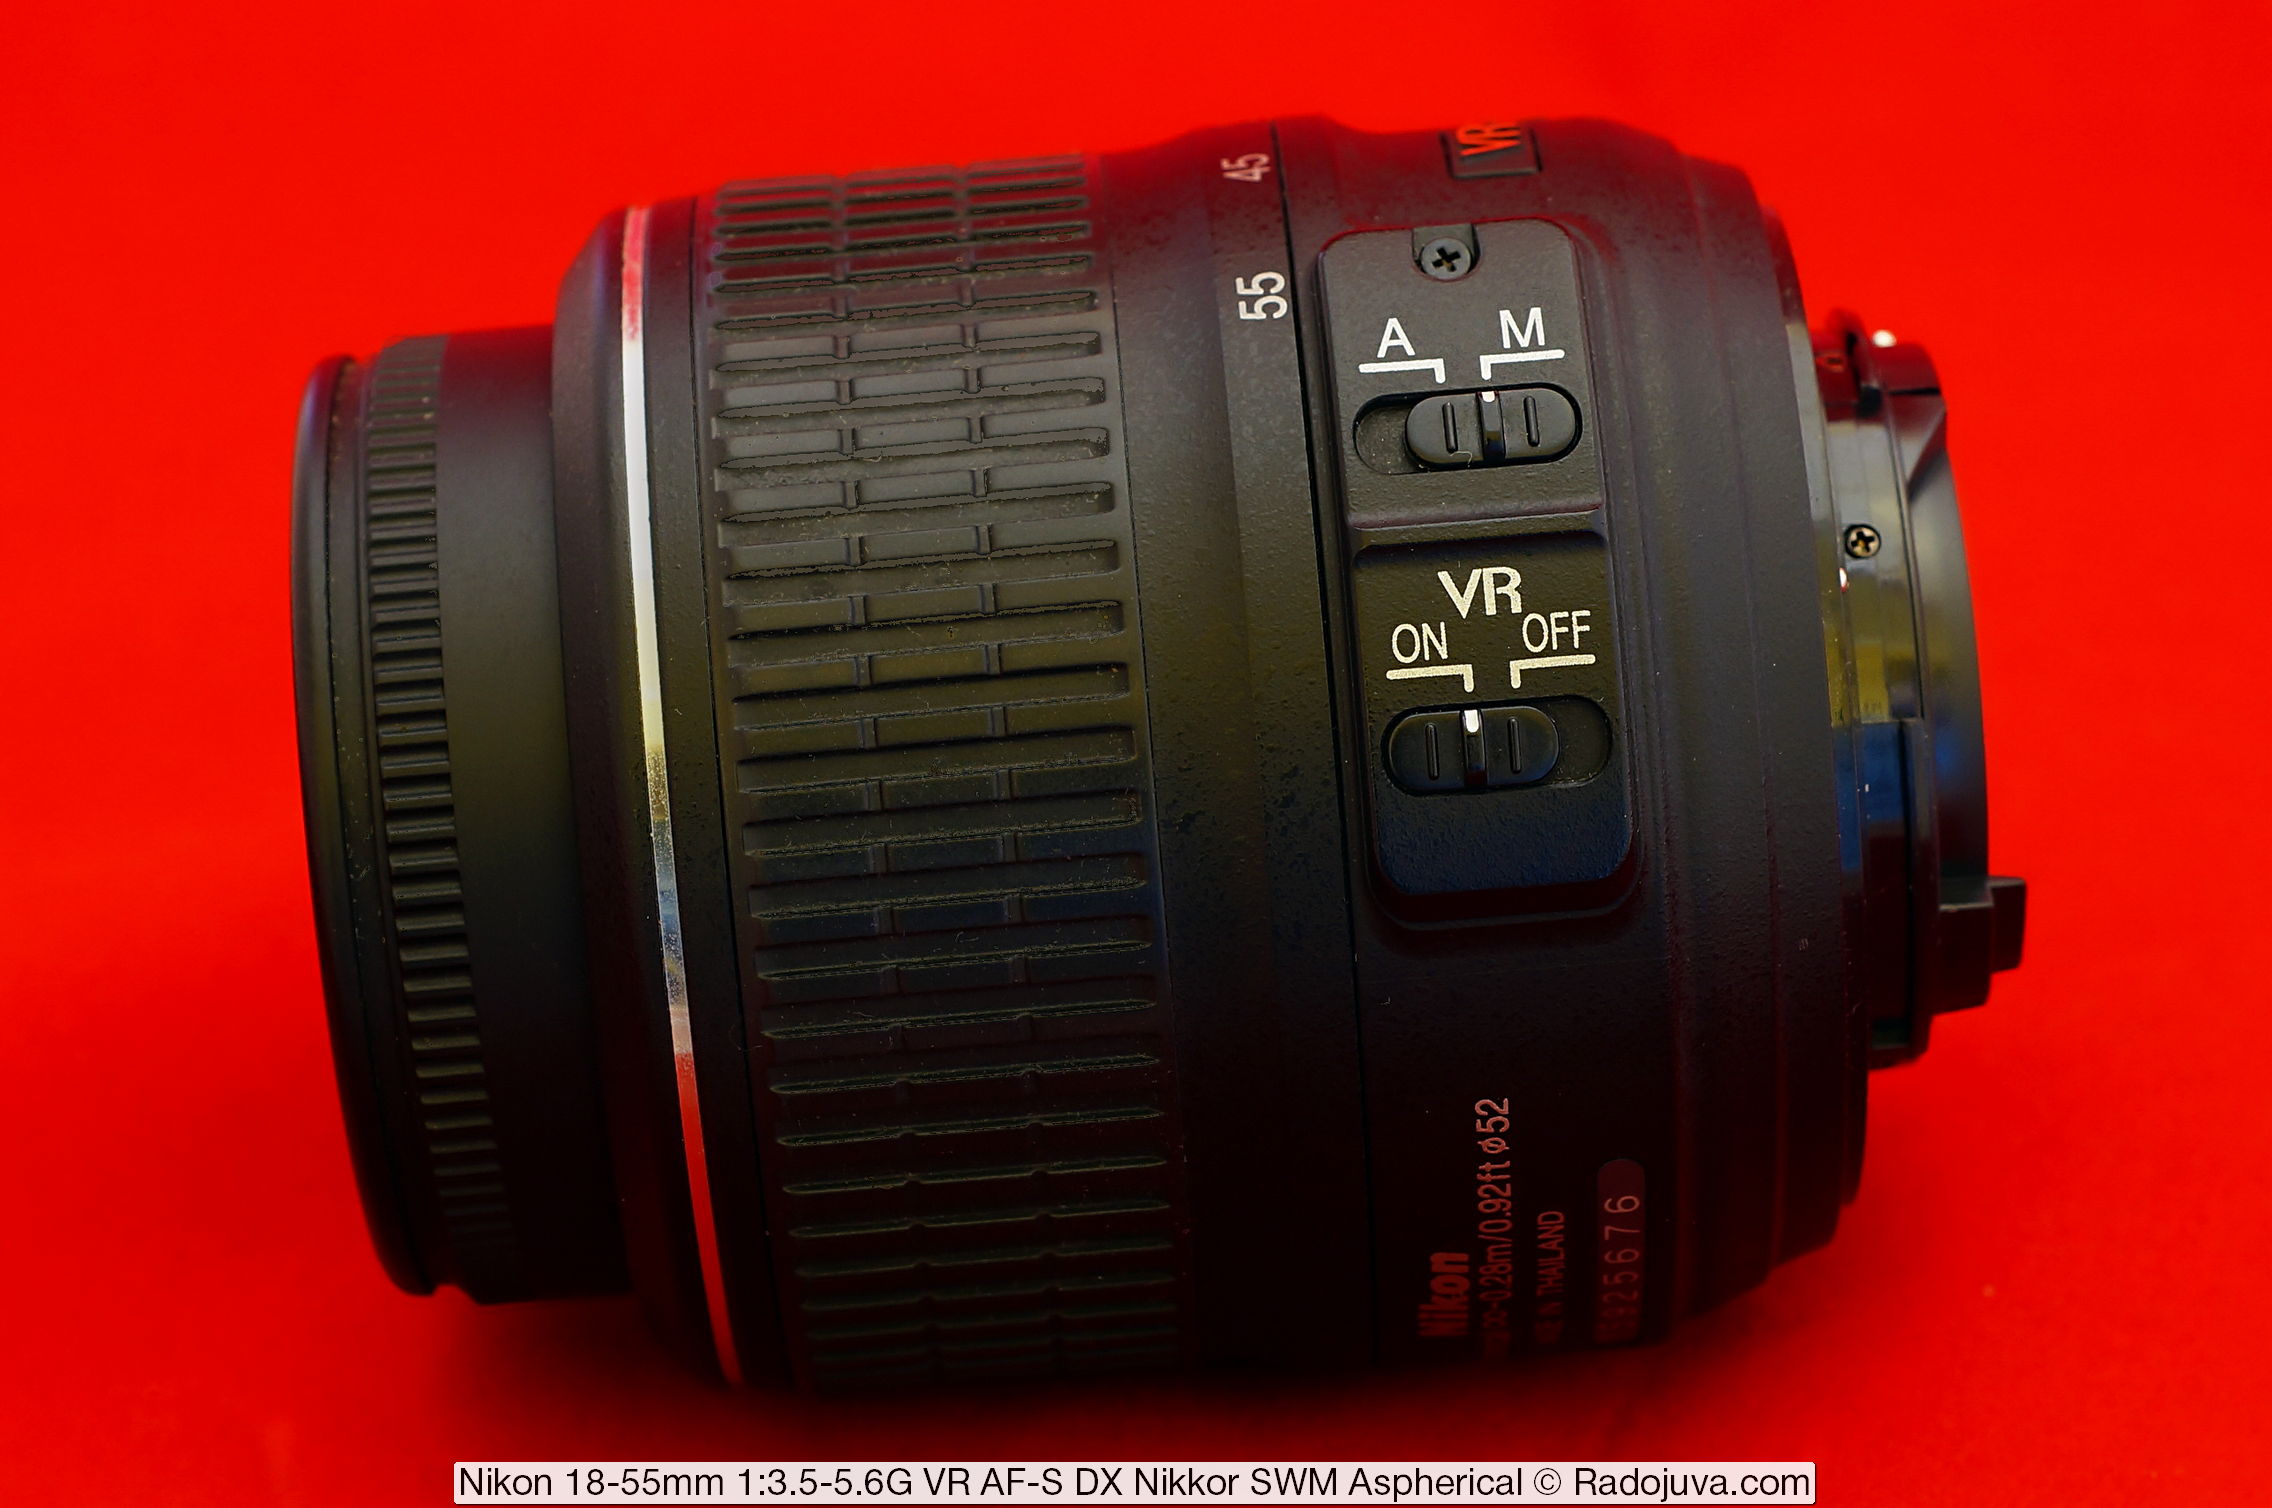 Nikon 18-55mm 1:3.5-5.6G VR AF-S DX Nikkor